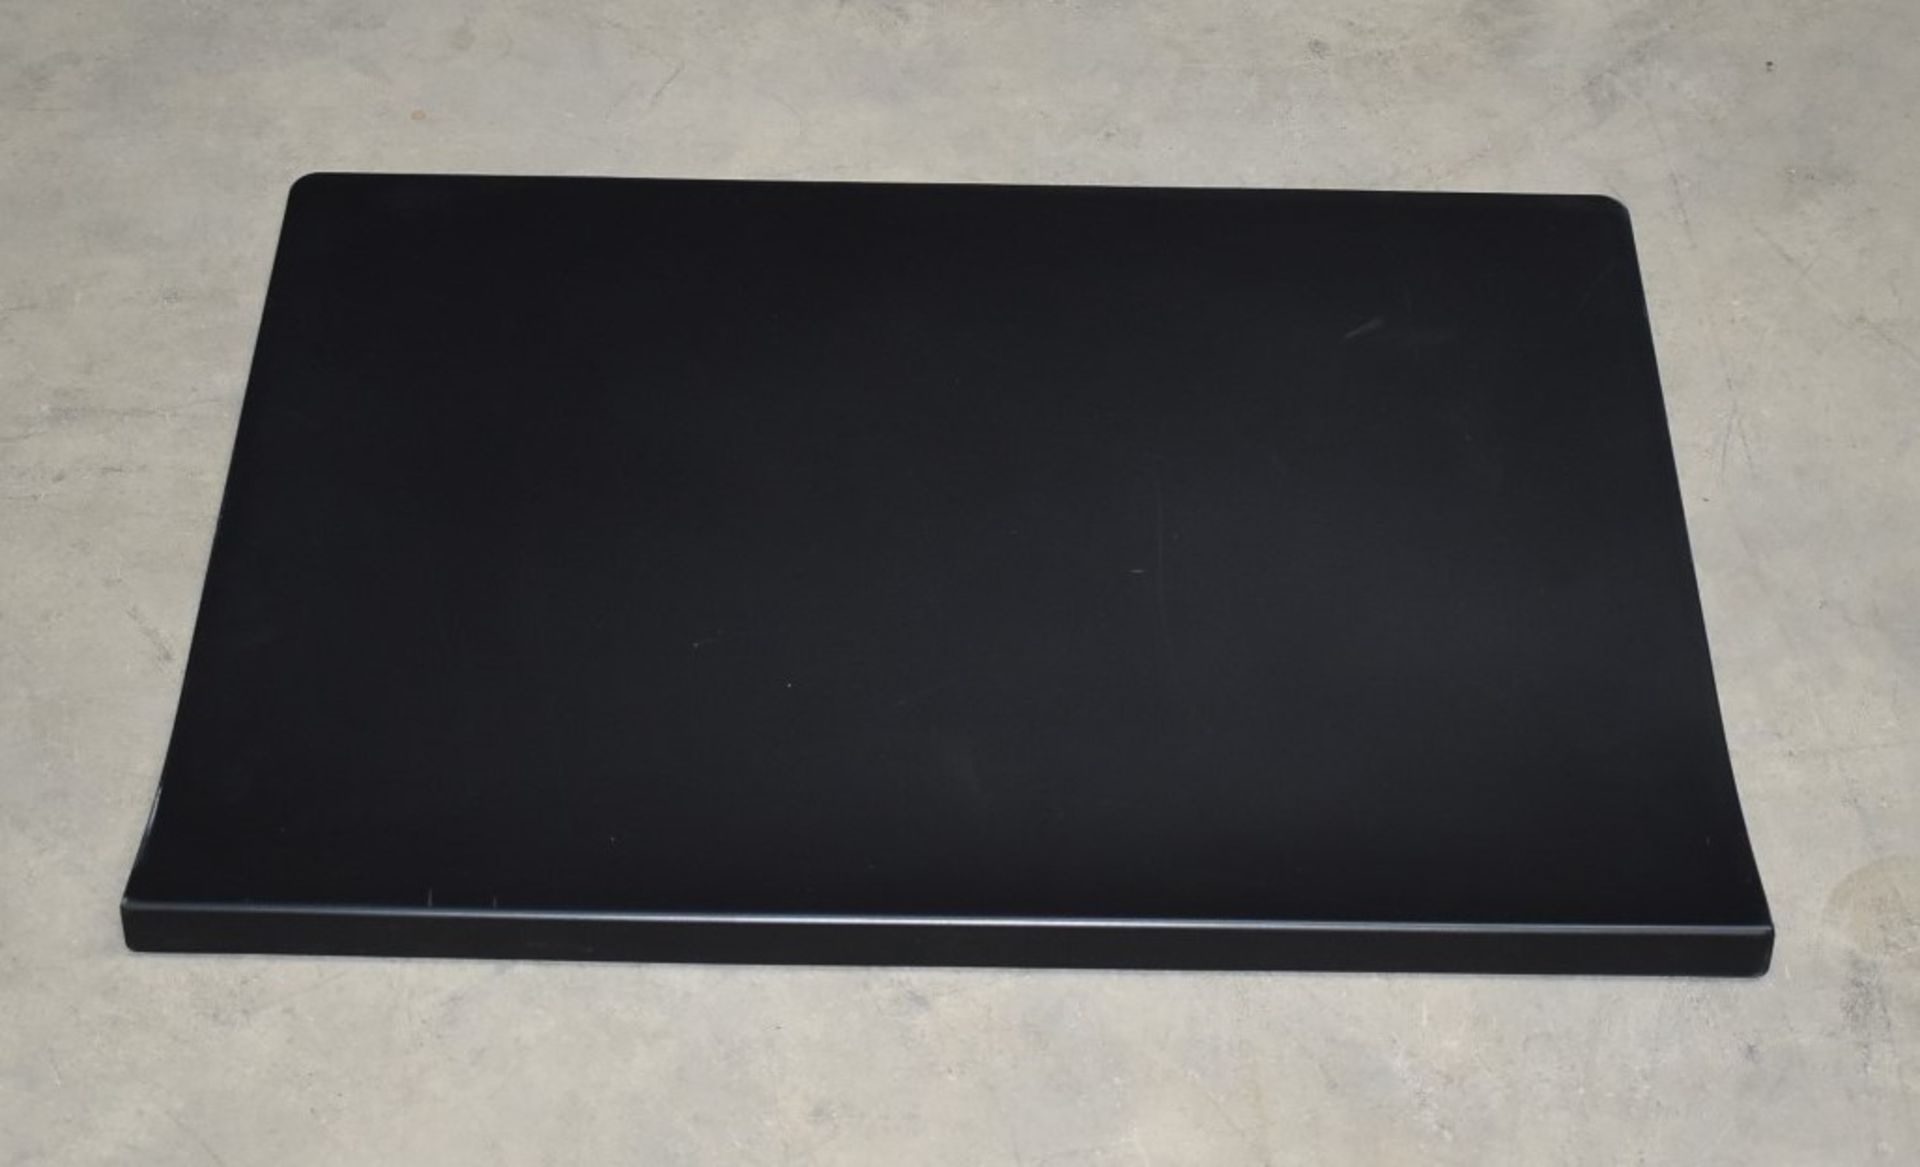 1 x Vitra Joyn Desk Pad in Black - Designed by Ronan & Erwan Bouroullec - Size: 70 x 50 cms - RRP £ - Image 4 of 7